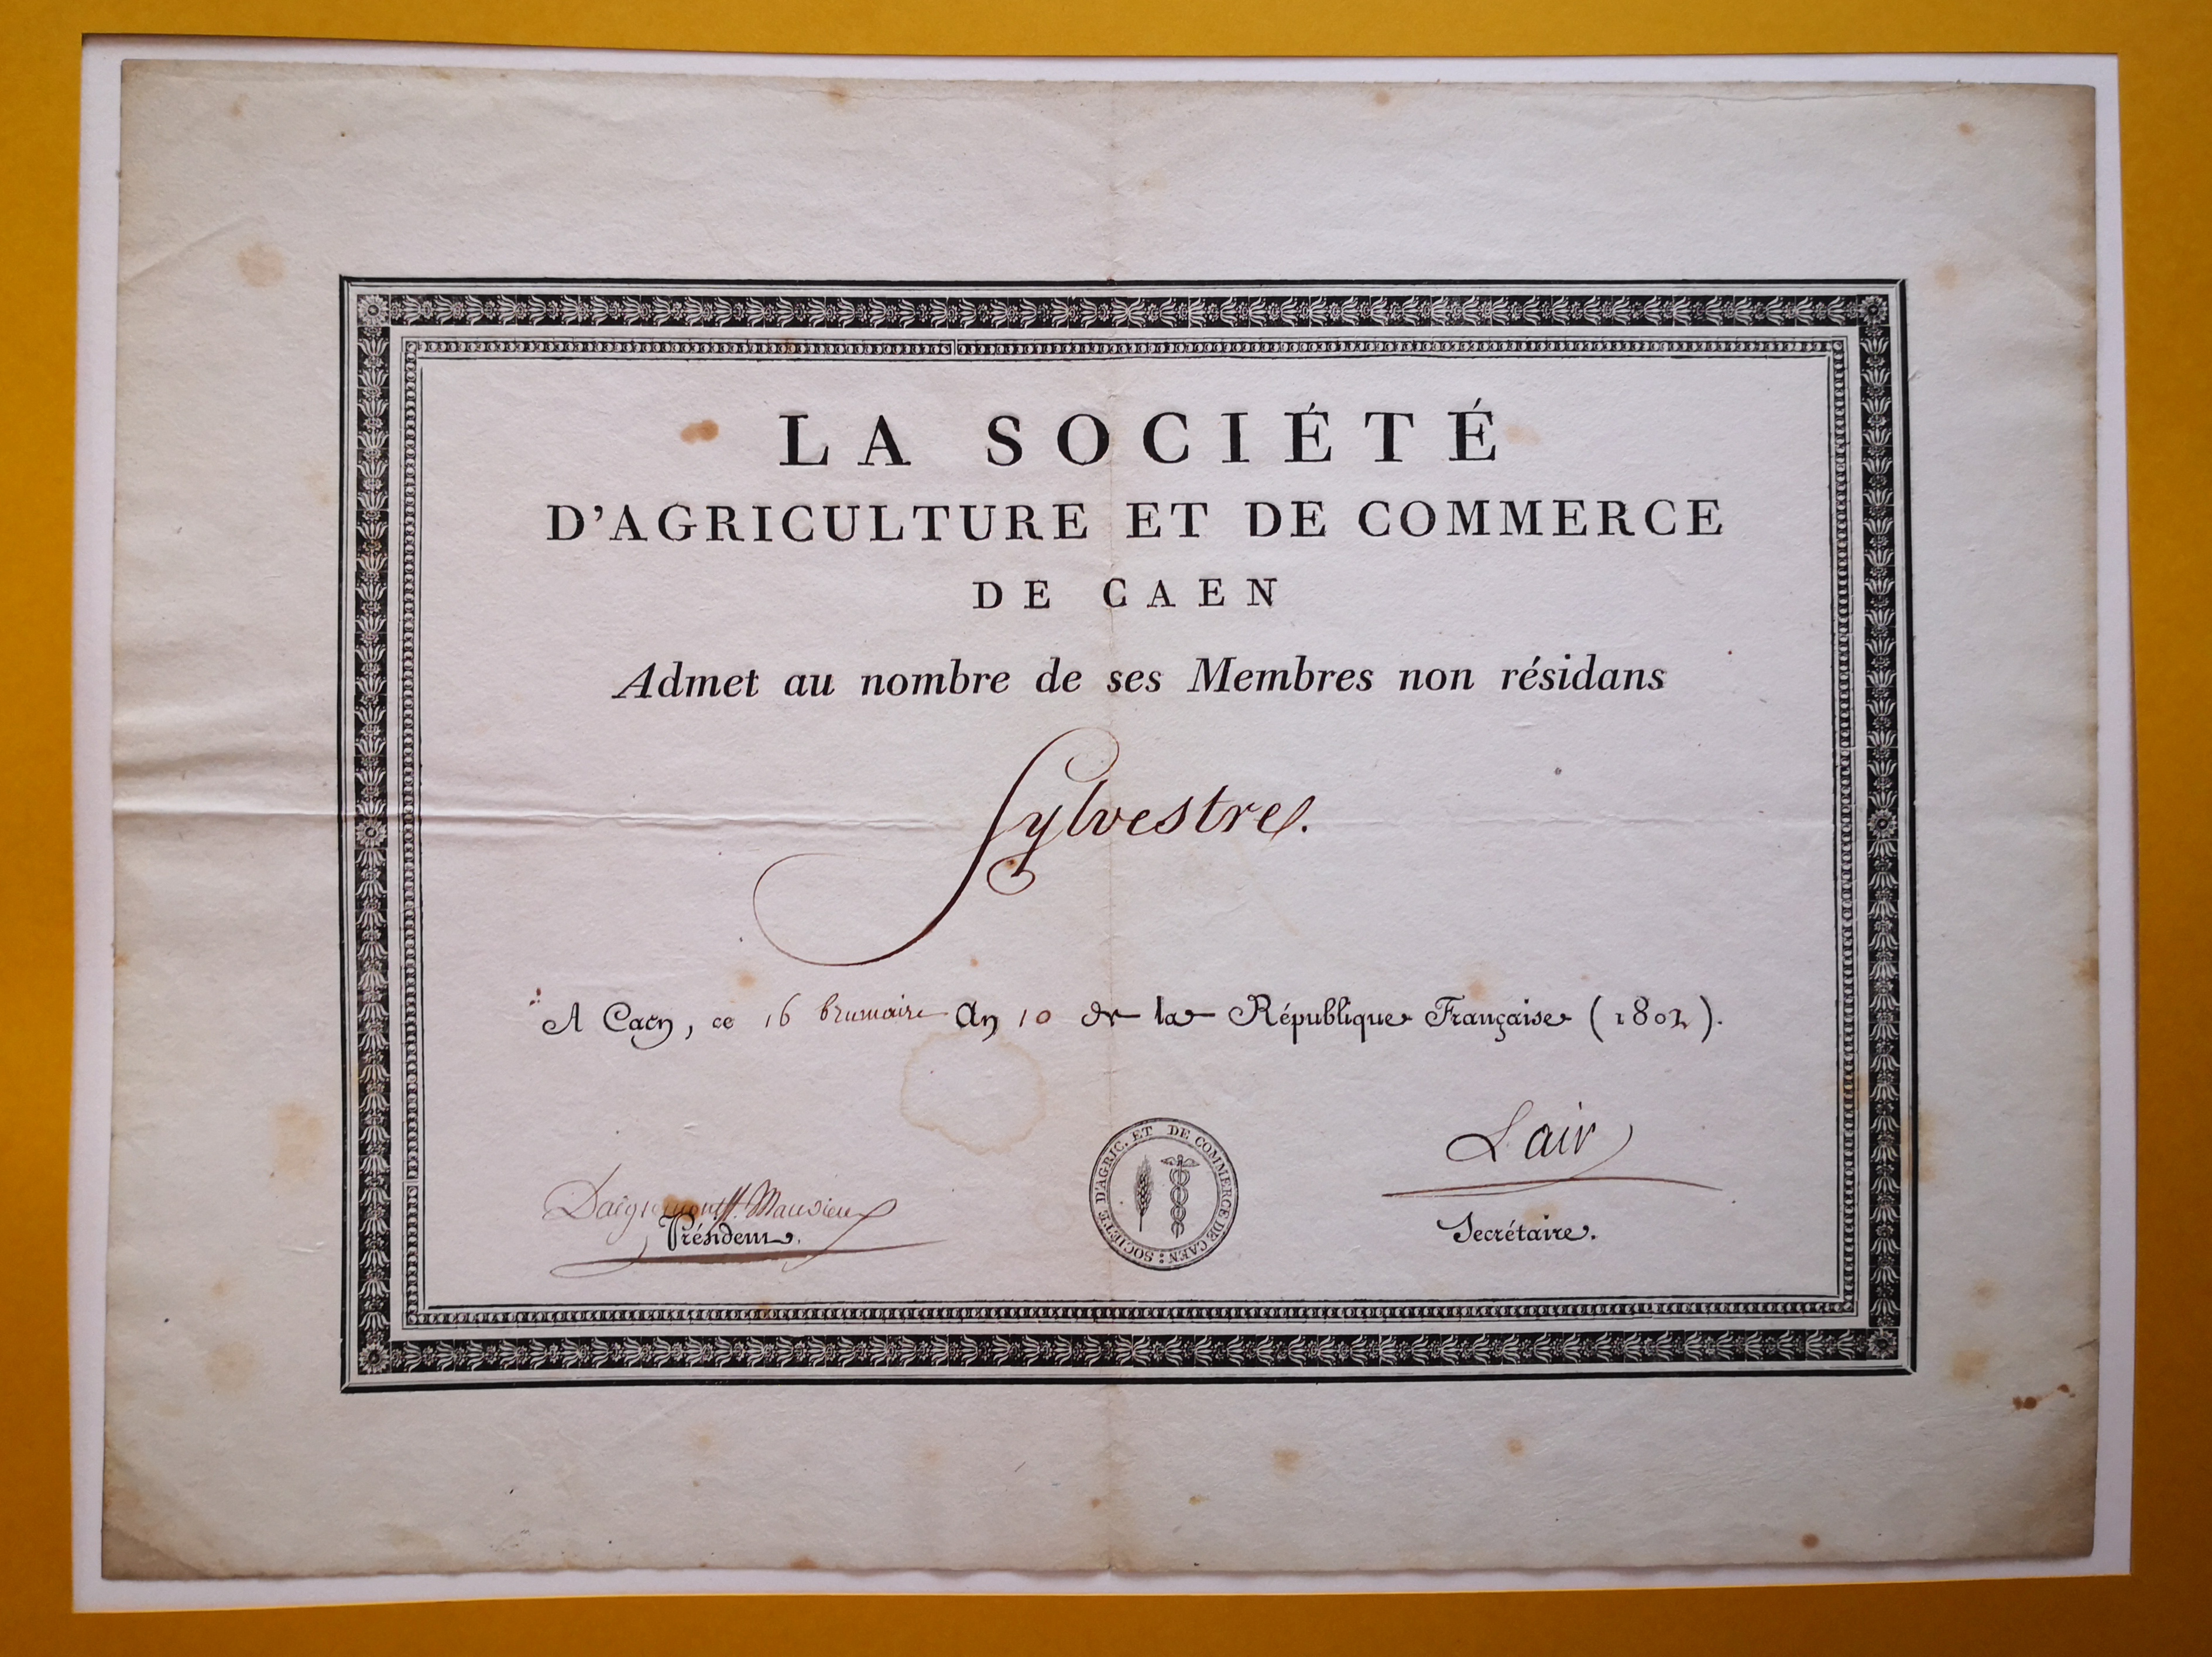  Diplôme de membre de la Société d'Agriculture et de Commerce de Caen - Document 1